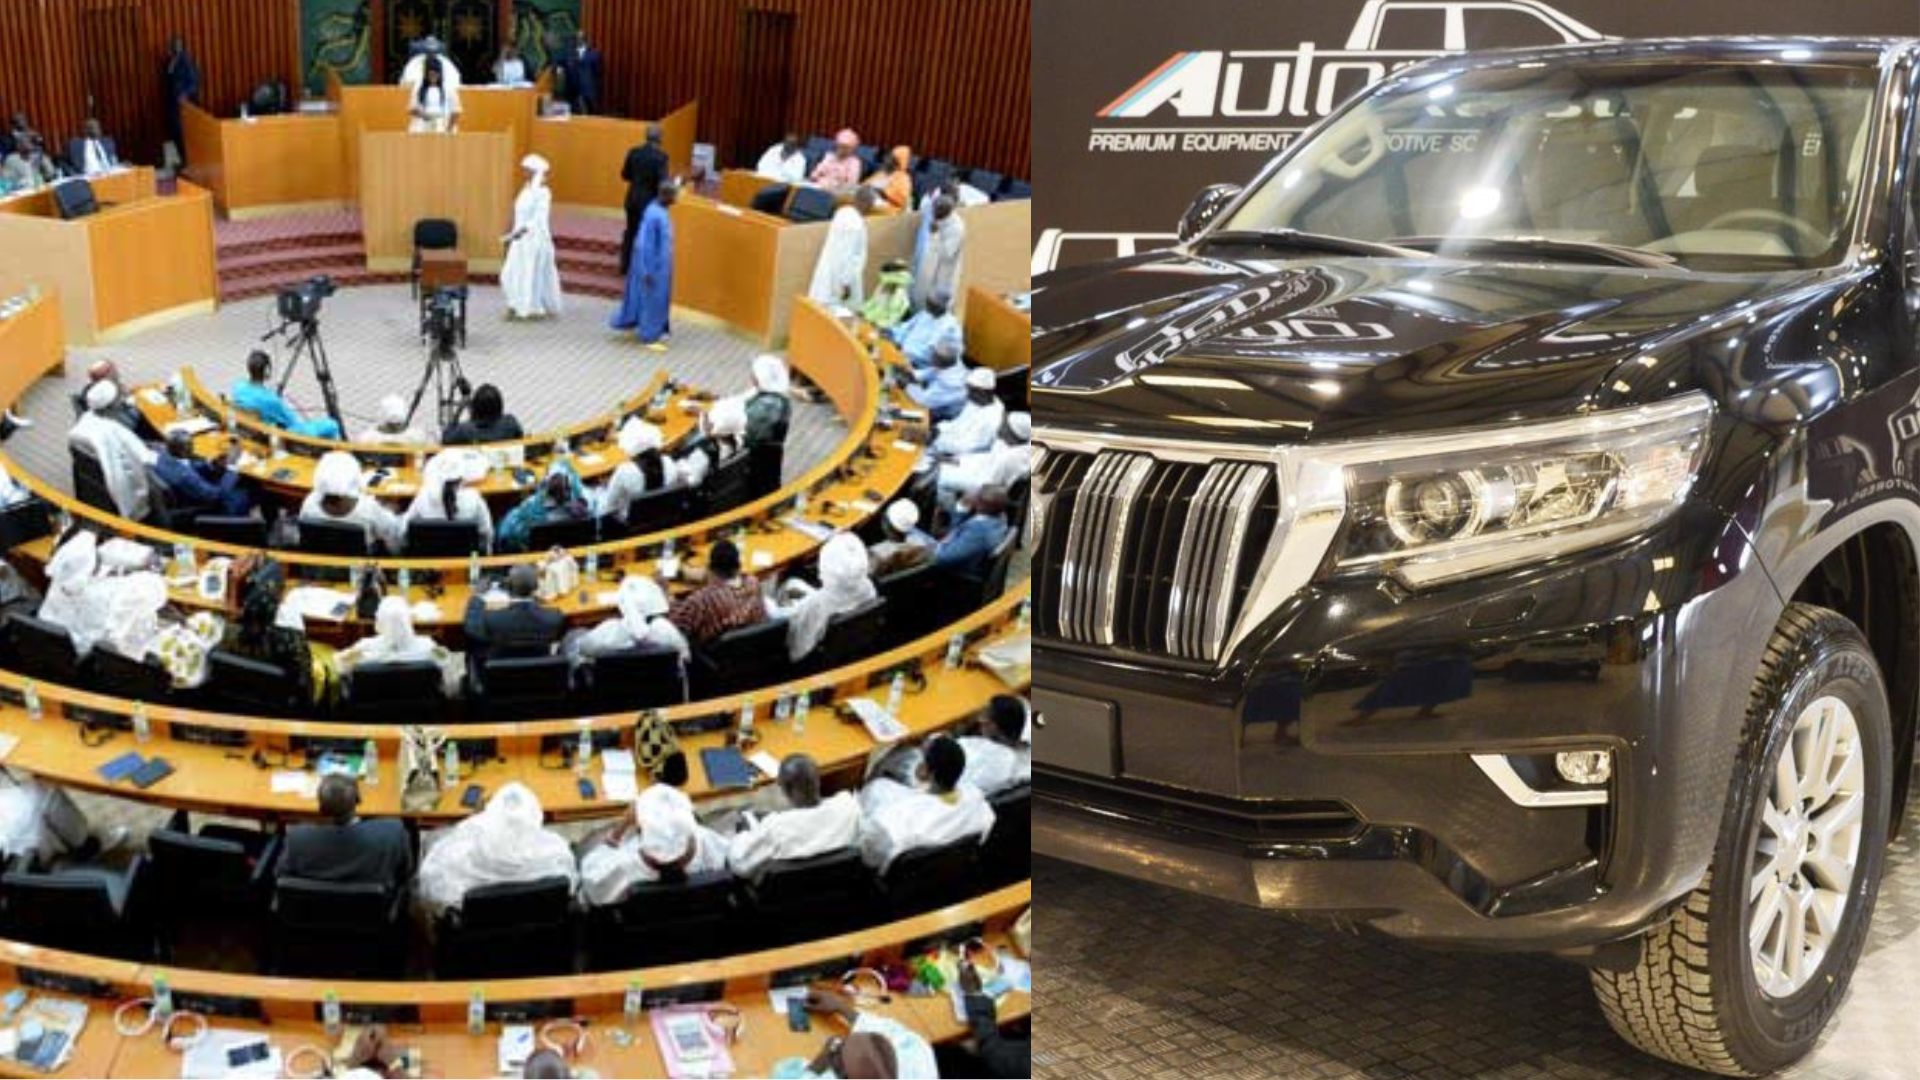 Privilèges pour le Bureau de l’Assemblée nationale : Dotation de voitures de luxe